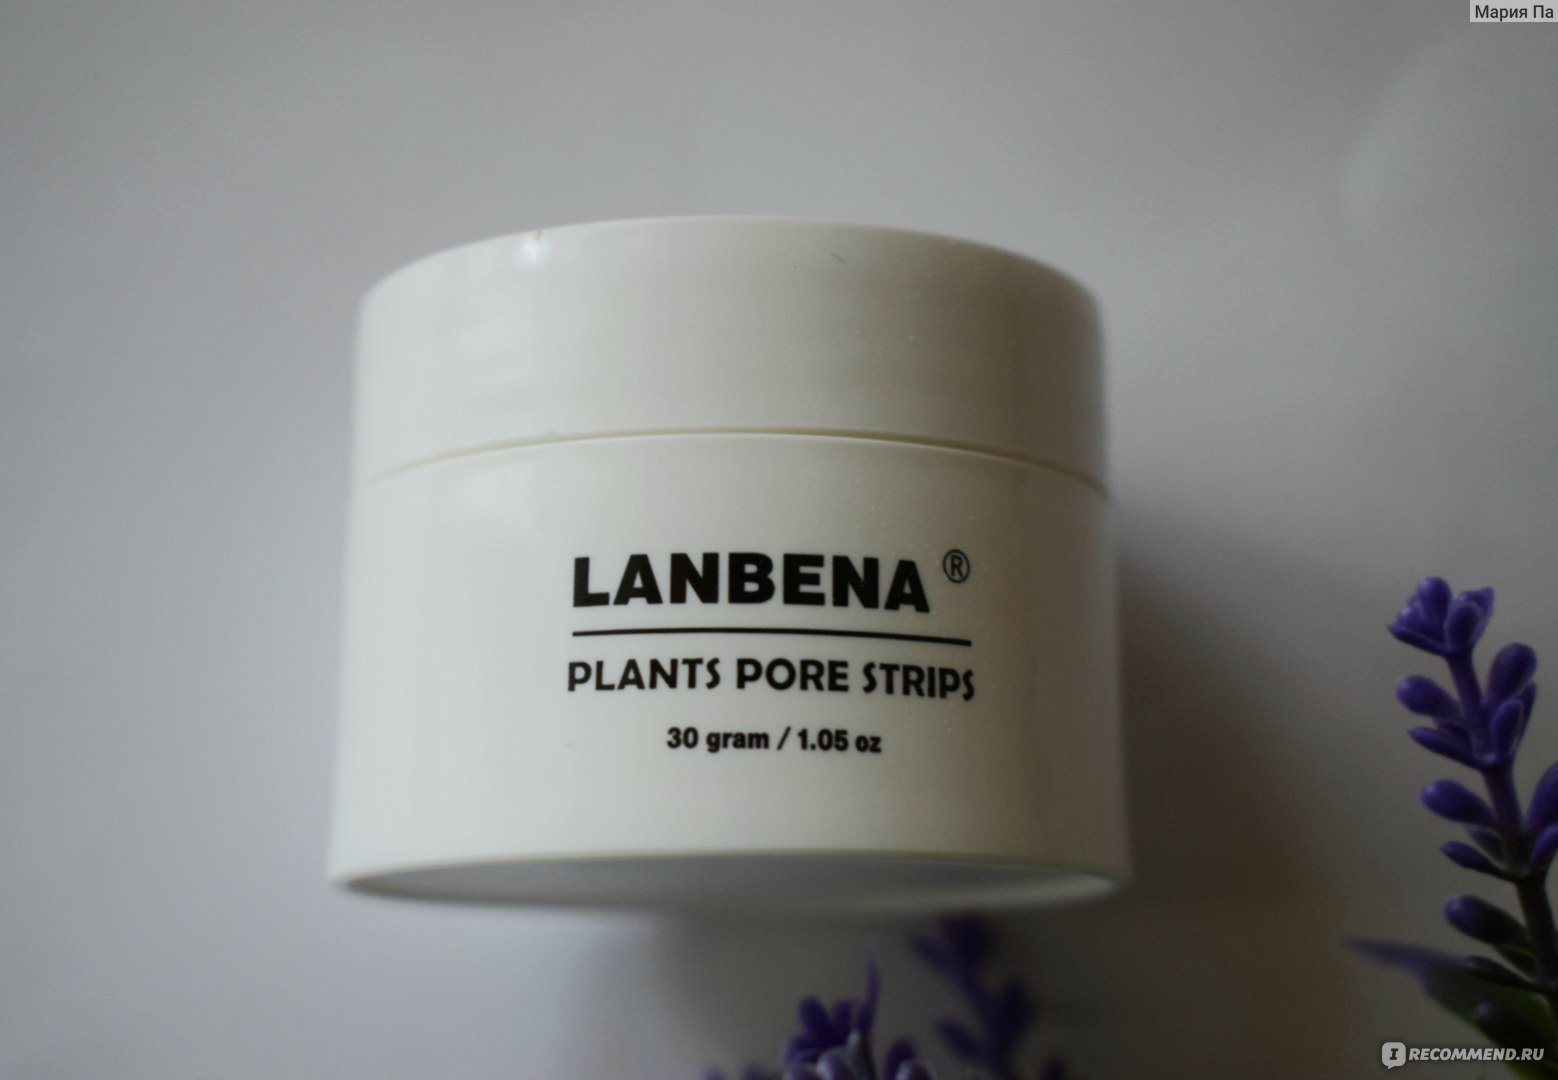 Lanbena plants